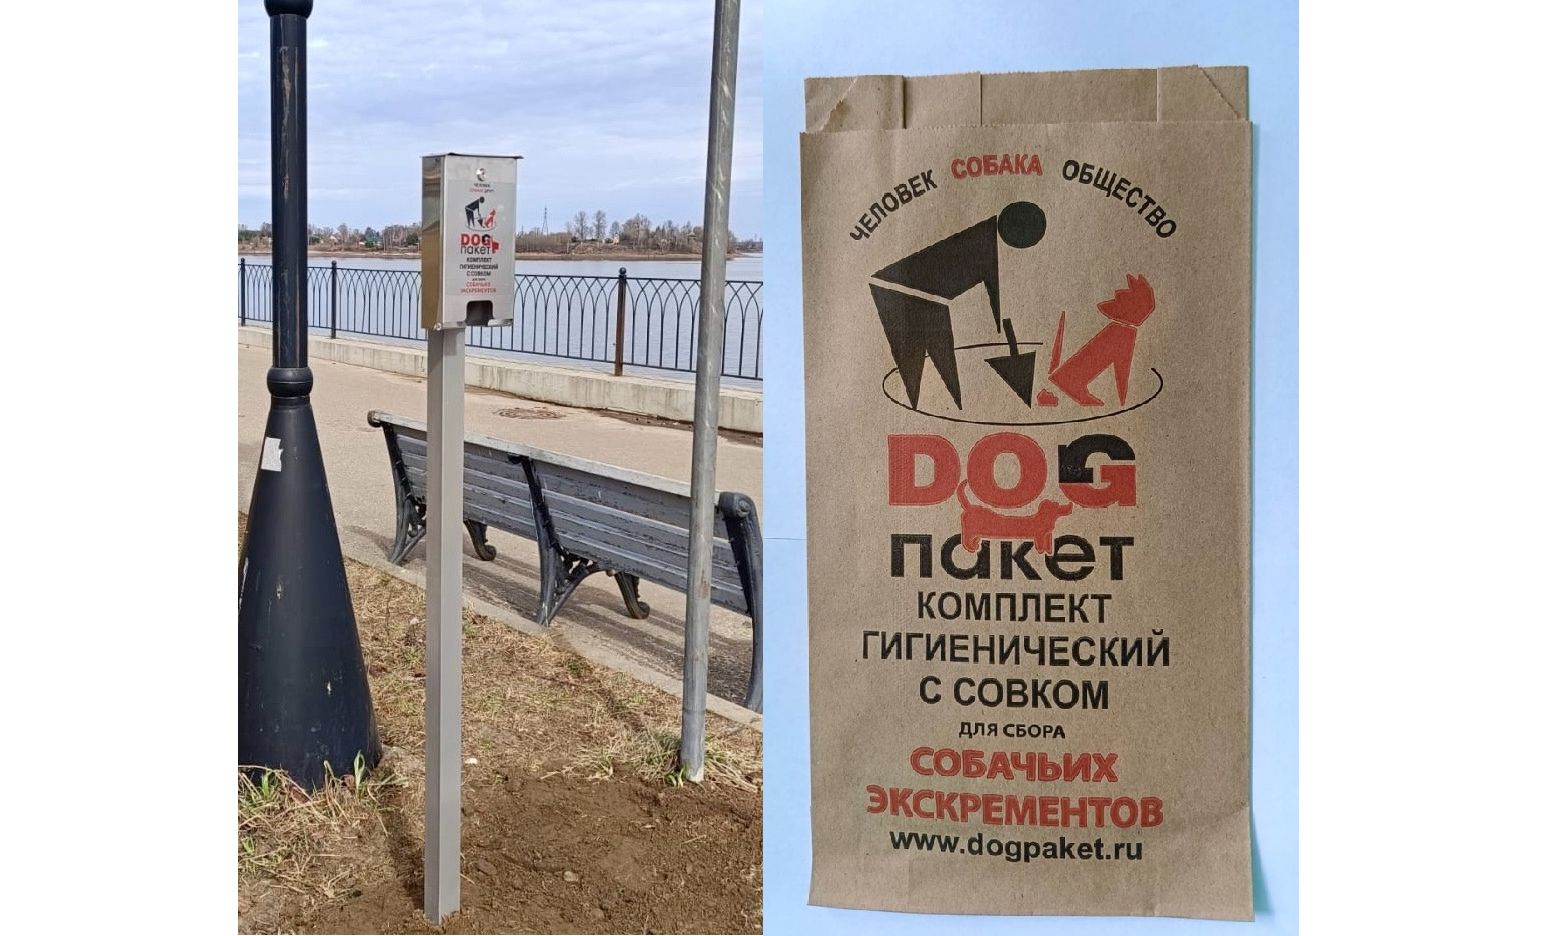 В Рыбинске устанавливают стойки с дог-пакетами